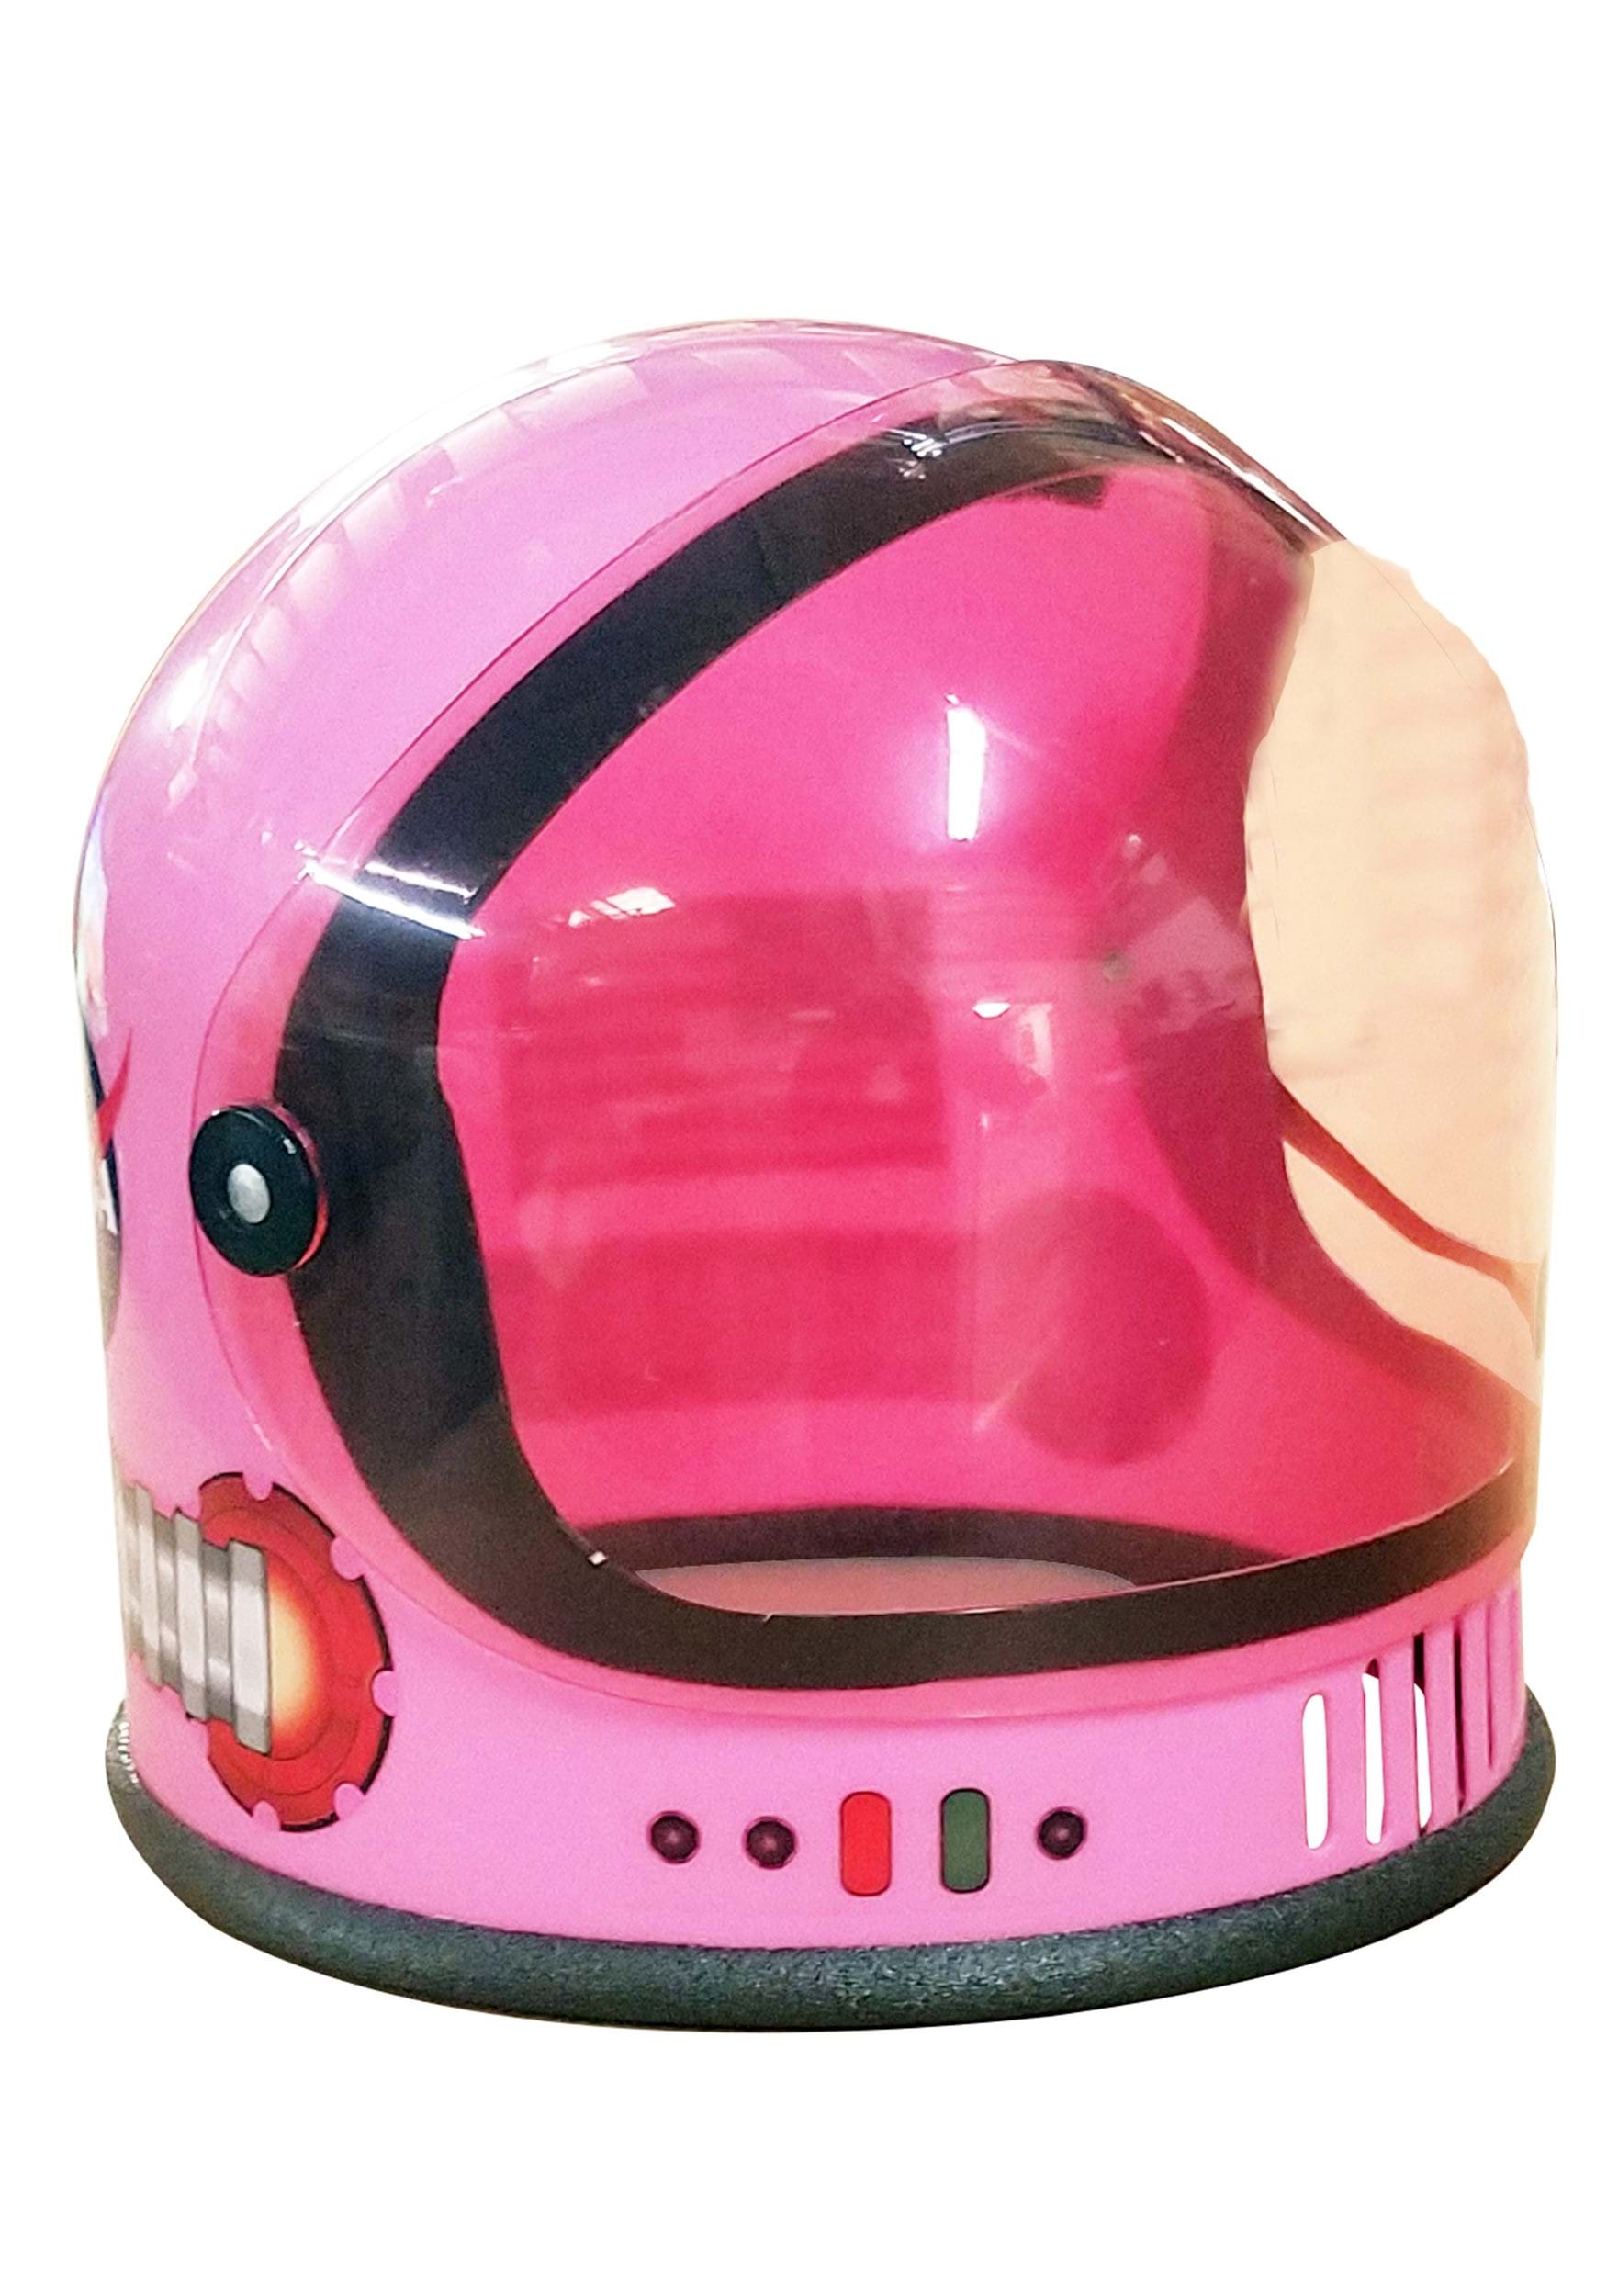 Casco de astronauta de niña rosa Multicolor